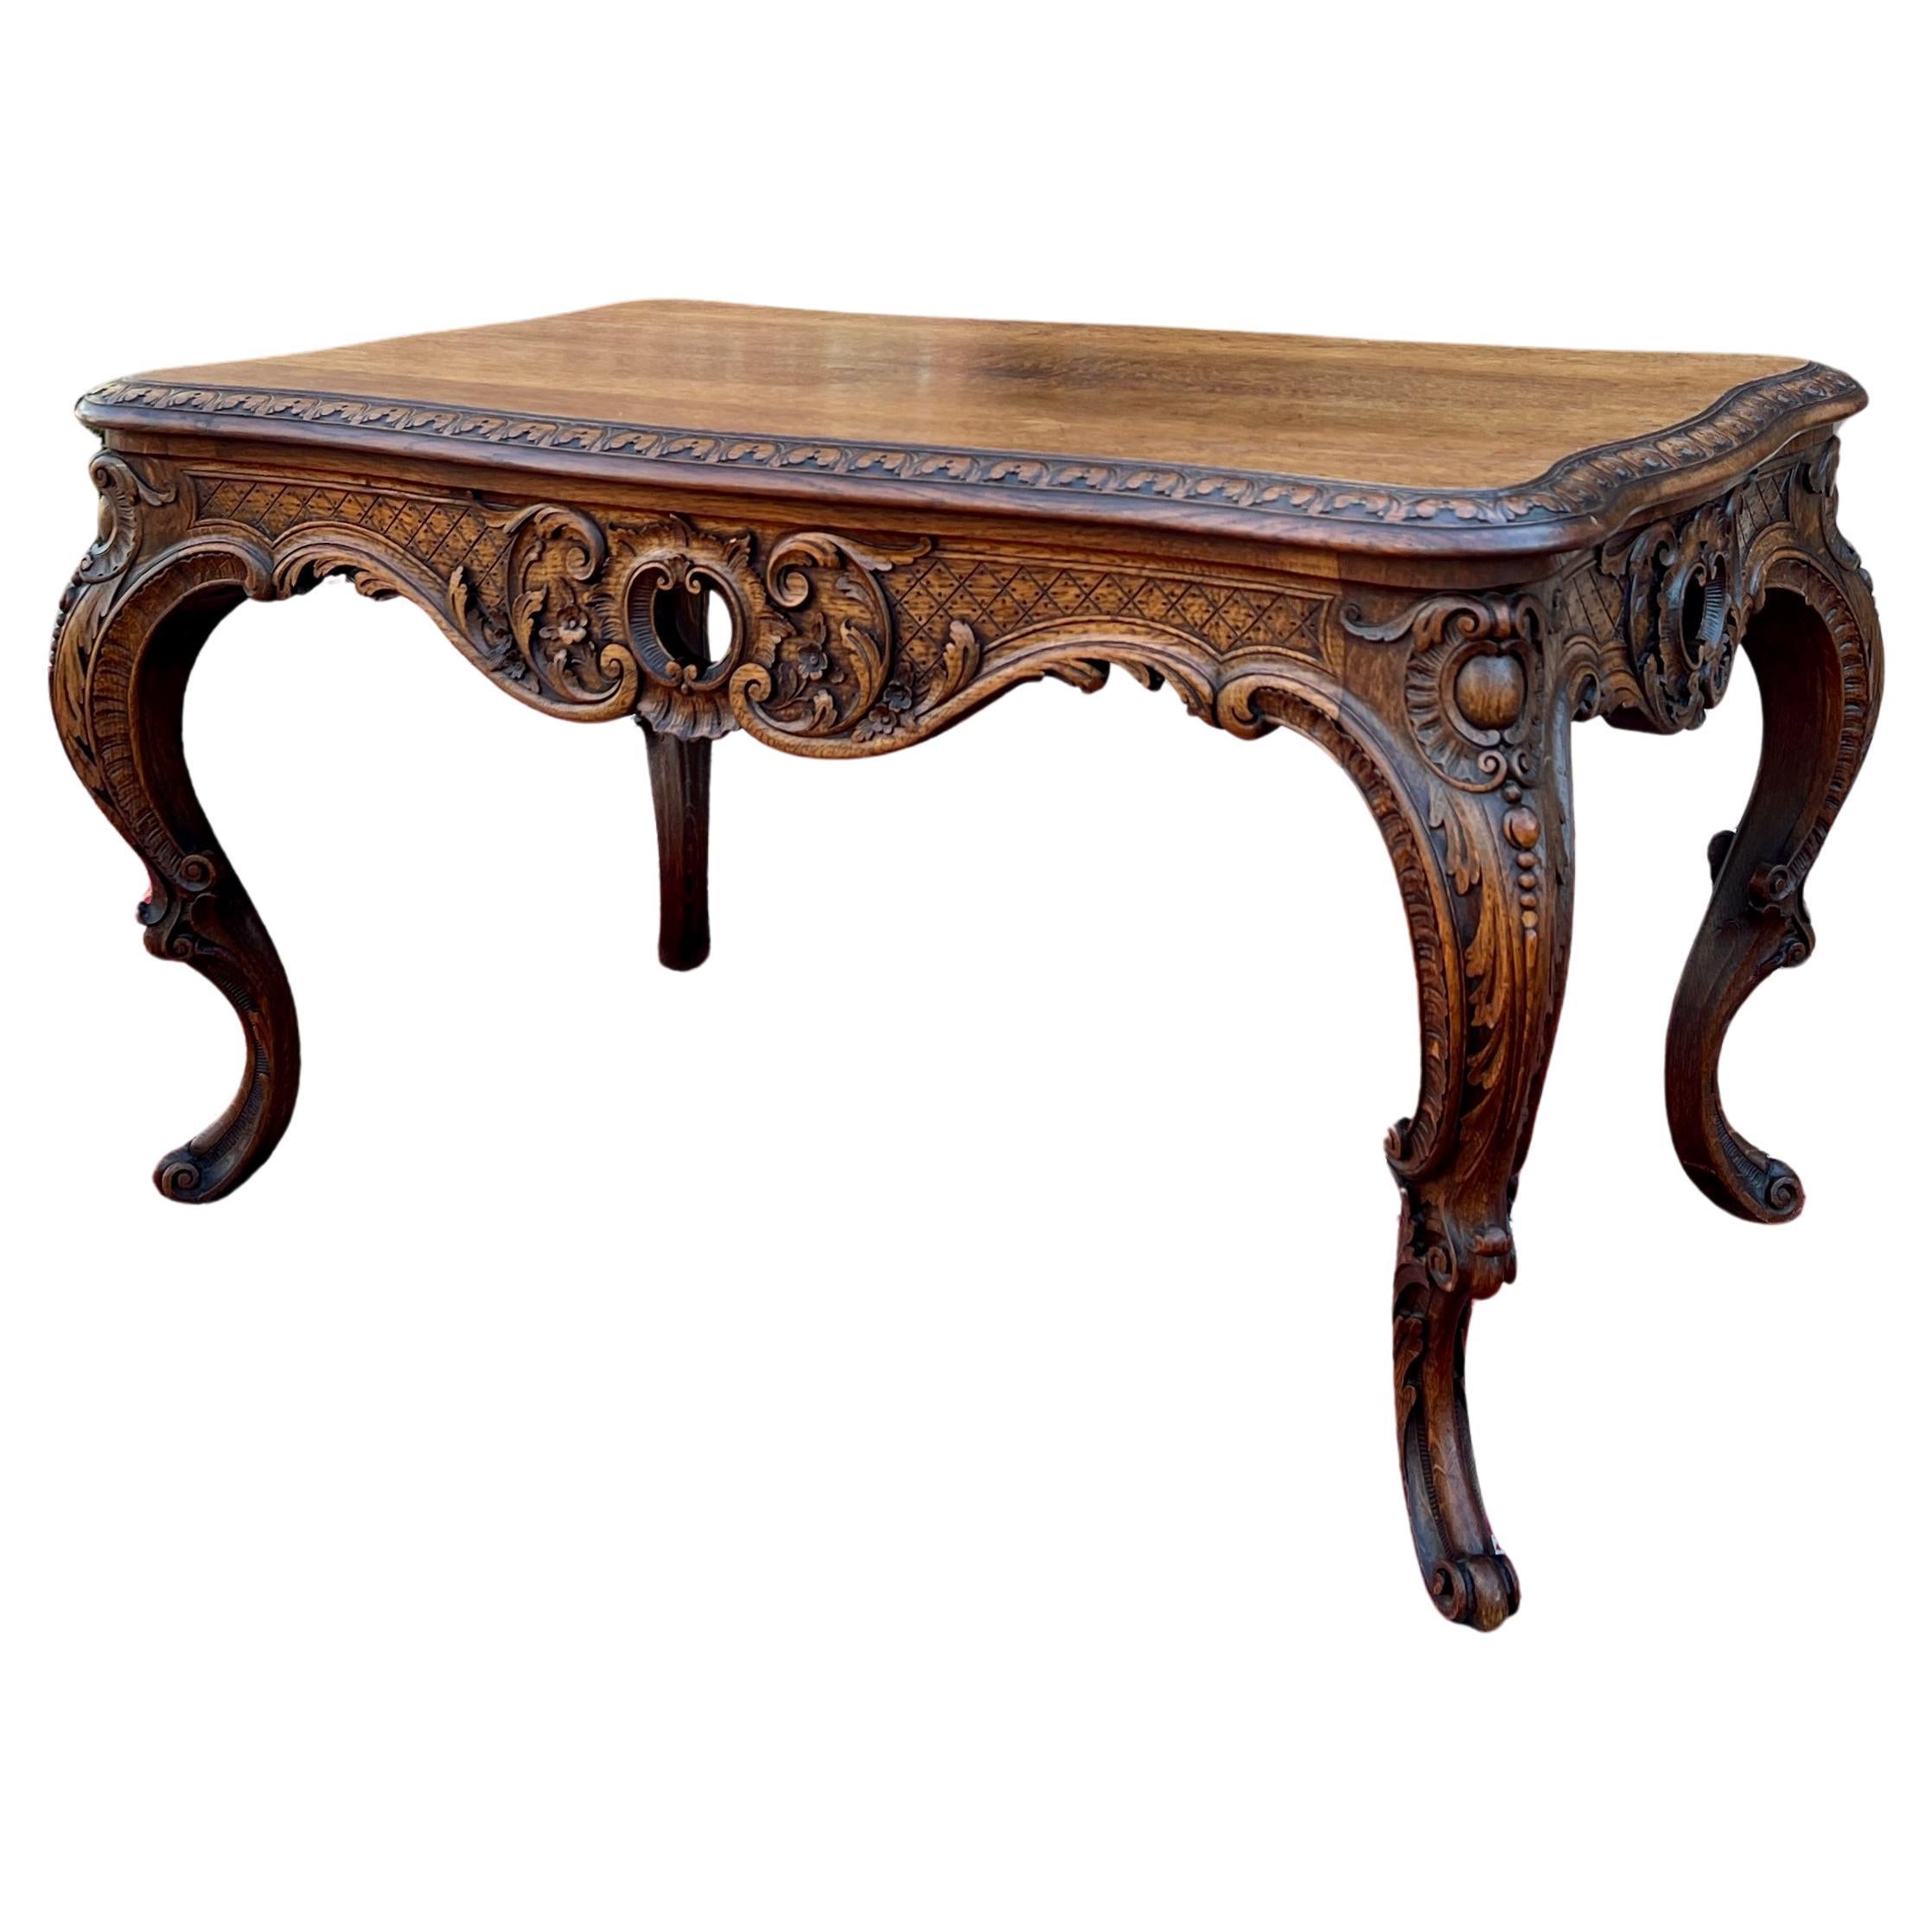 Ancienne table basse française de style Louis XV, banc en chêne Honey très sculpté